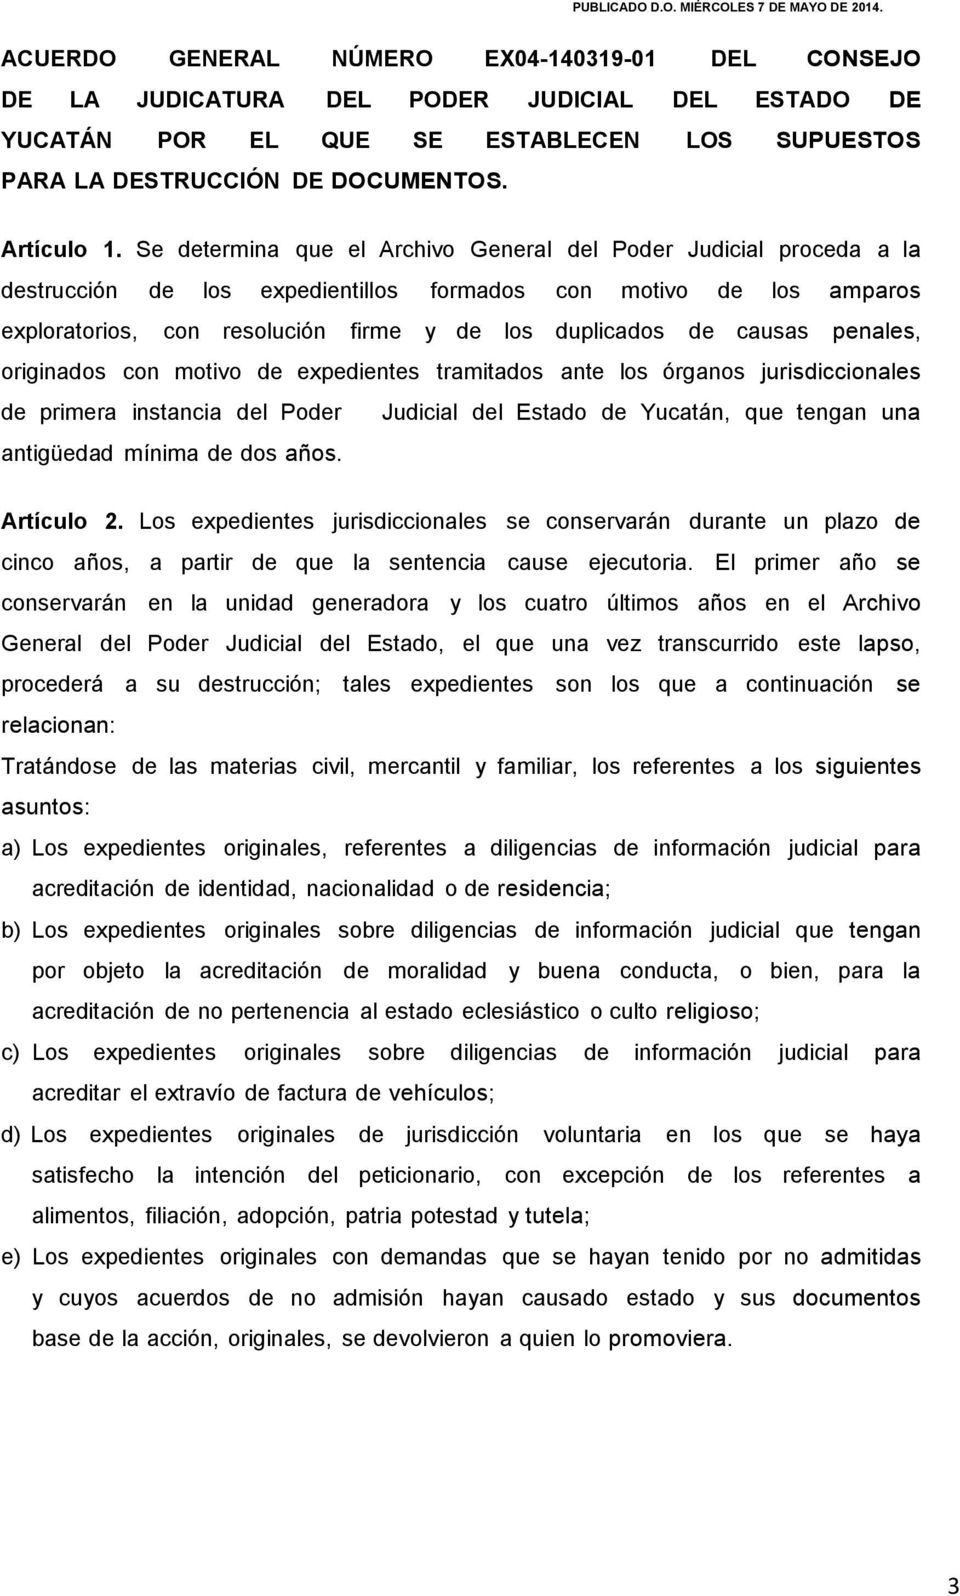 causas penales, originados con motivo de expedientes tramitados ante los órganos jurisdiccionales de primera instancia del Poder Judicial del Estado de Yucatán, que tengan una antigüedad mínima de